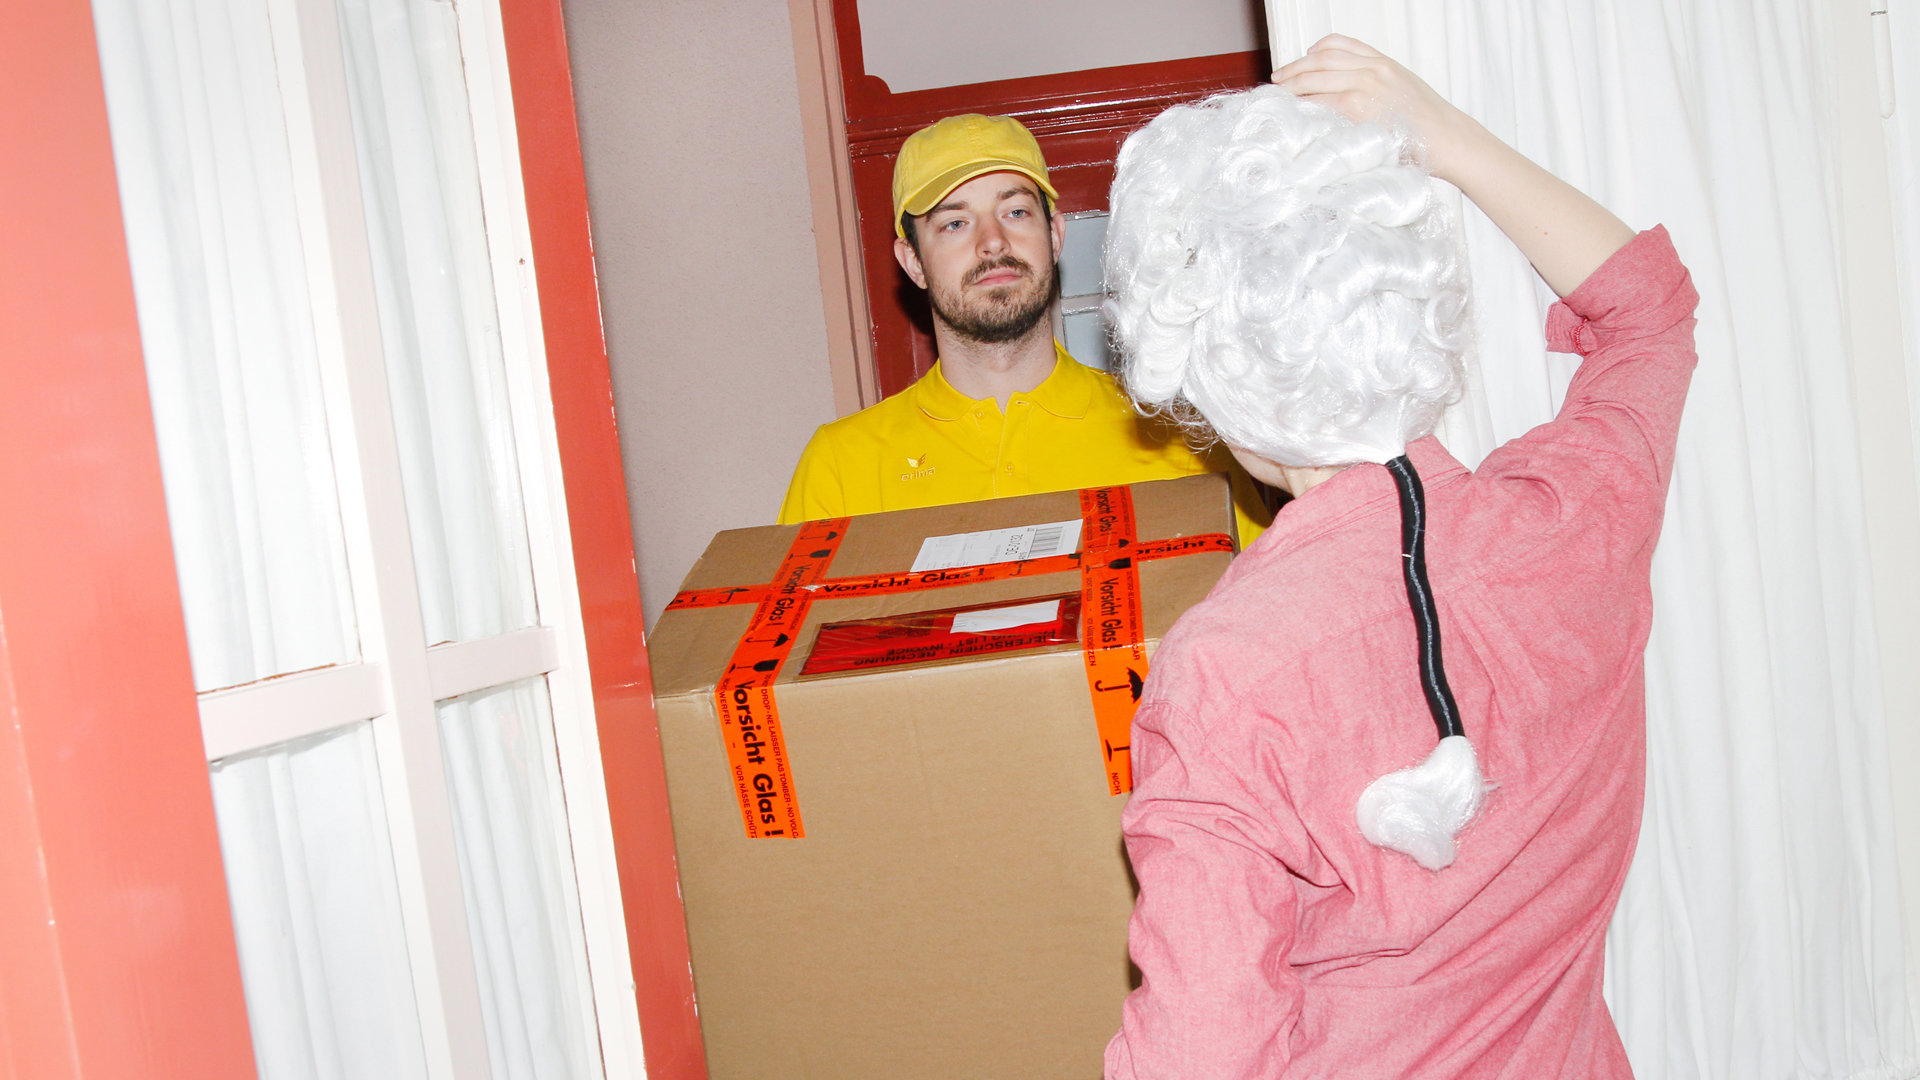 Frau mit Mozart-Perücke nimmt an der Haustür ein Paket an (Foto: Renke Brandt)